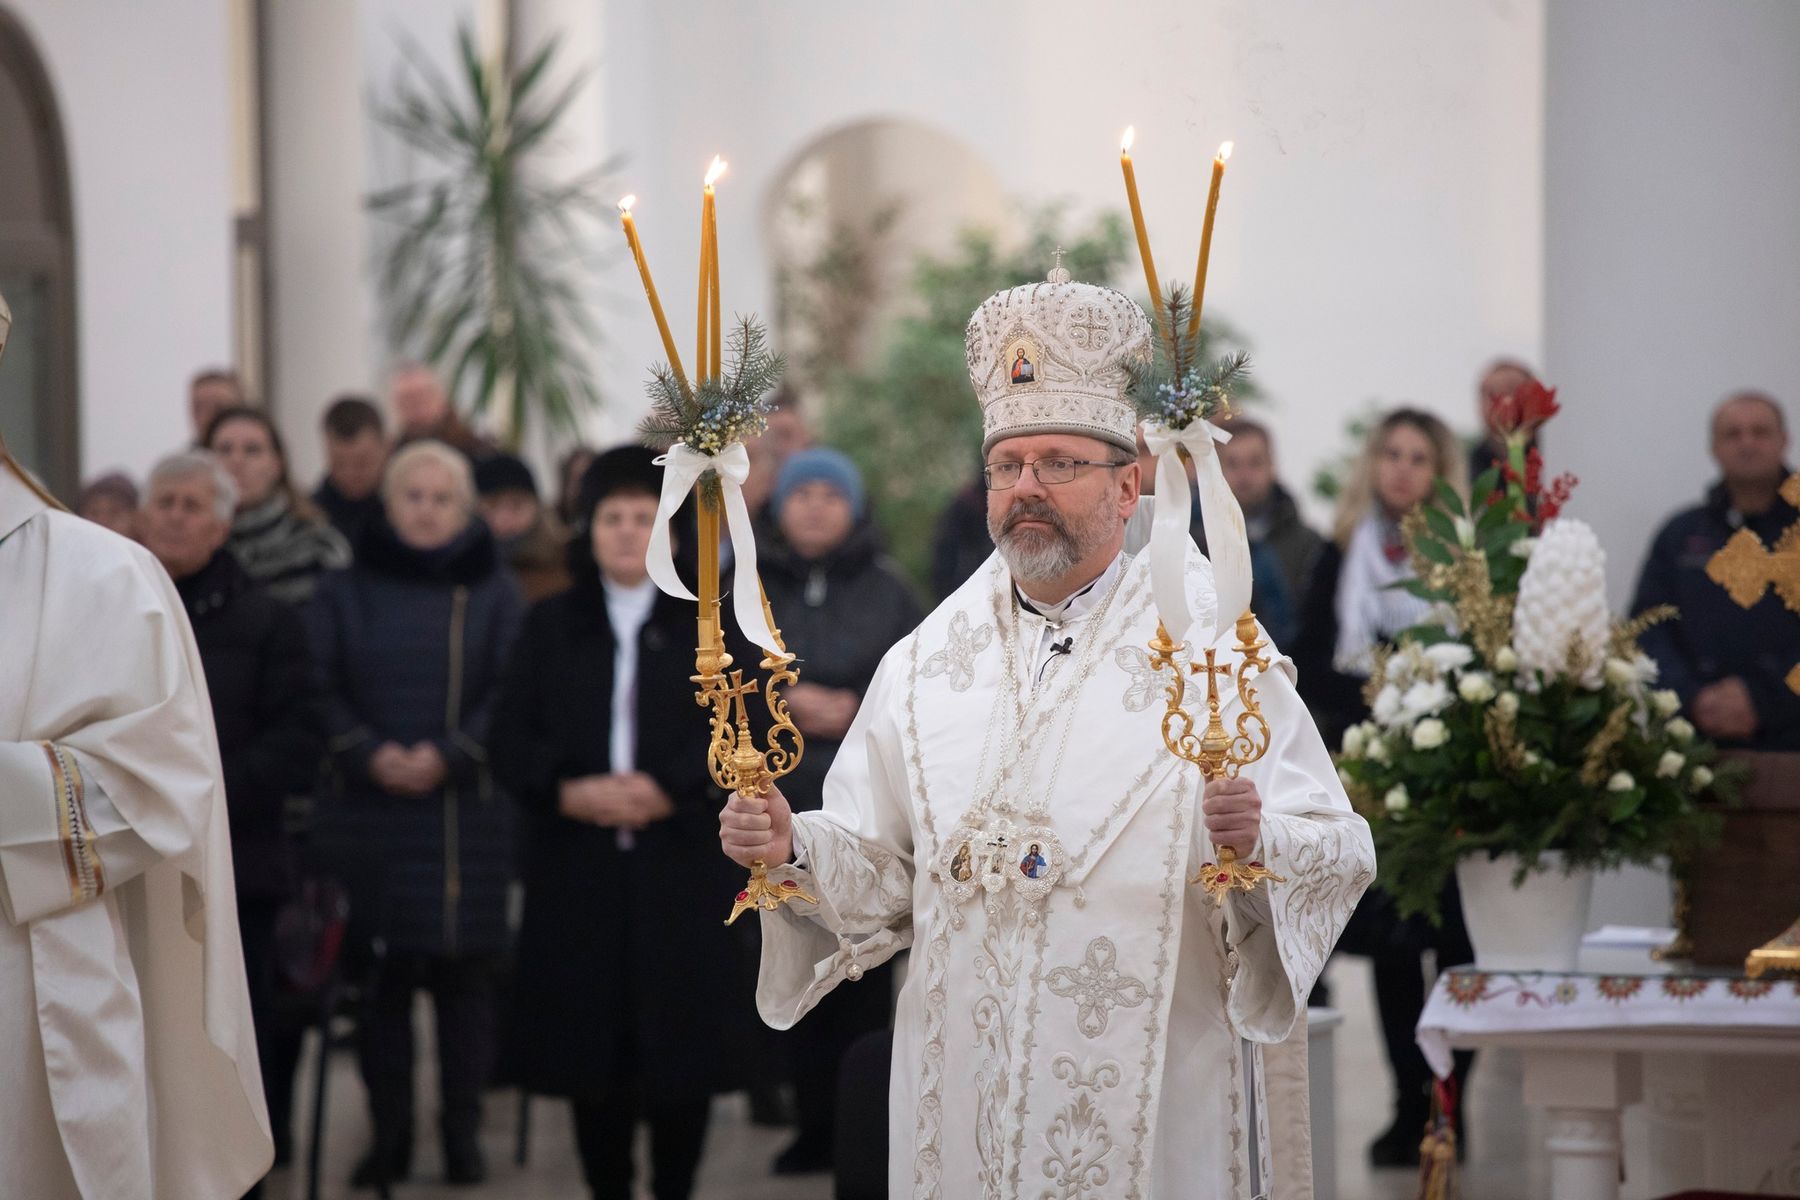 Блаженніший Святослав на Різдво Христове: «Дякуймо Богу за те, що Він сьогодні народився в Україні»